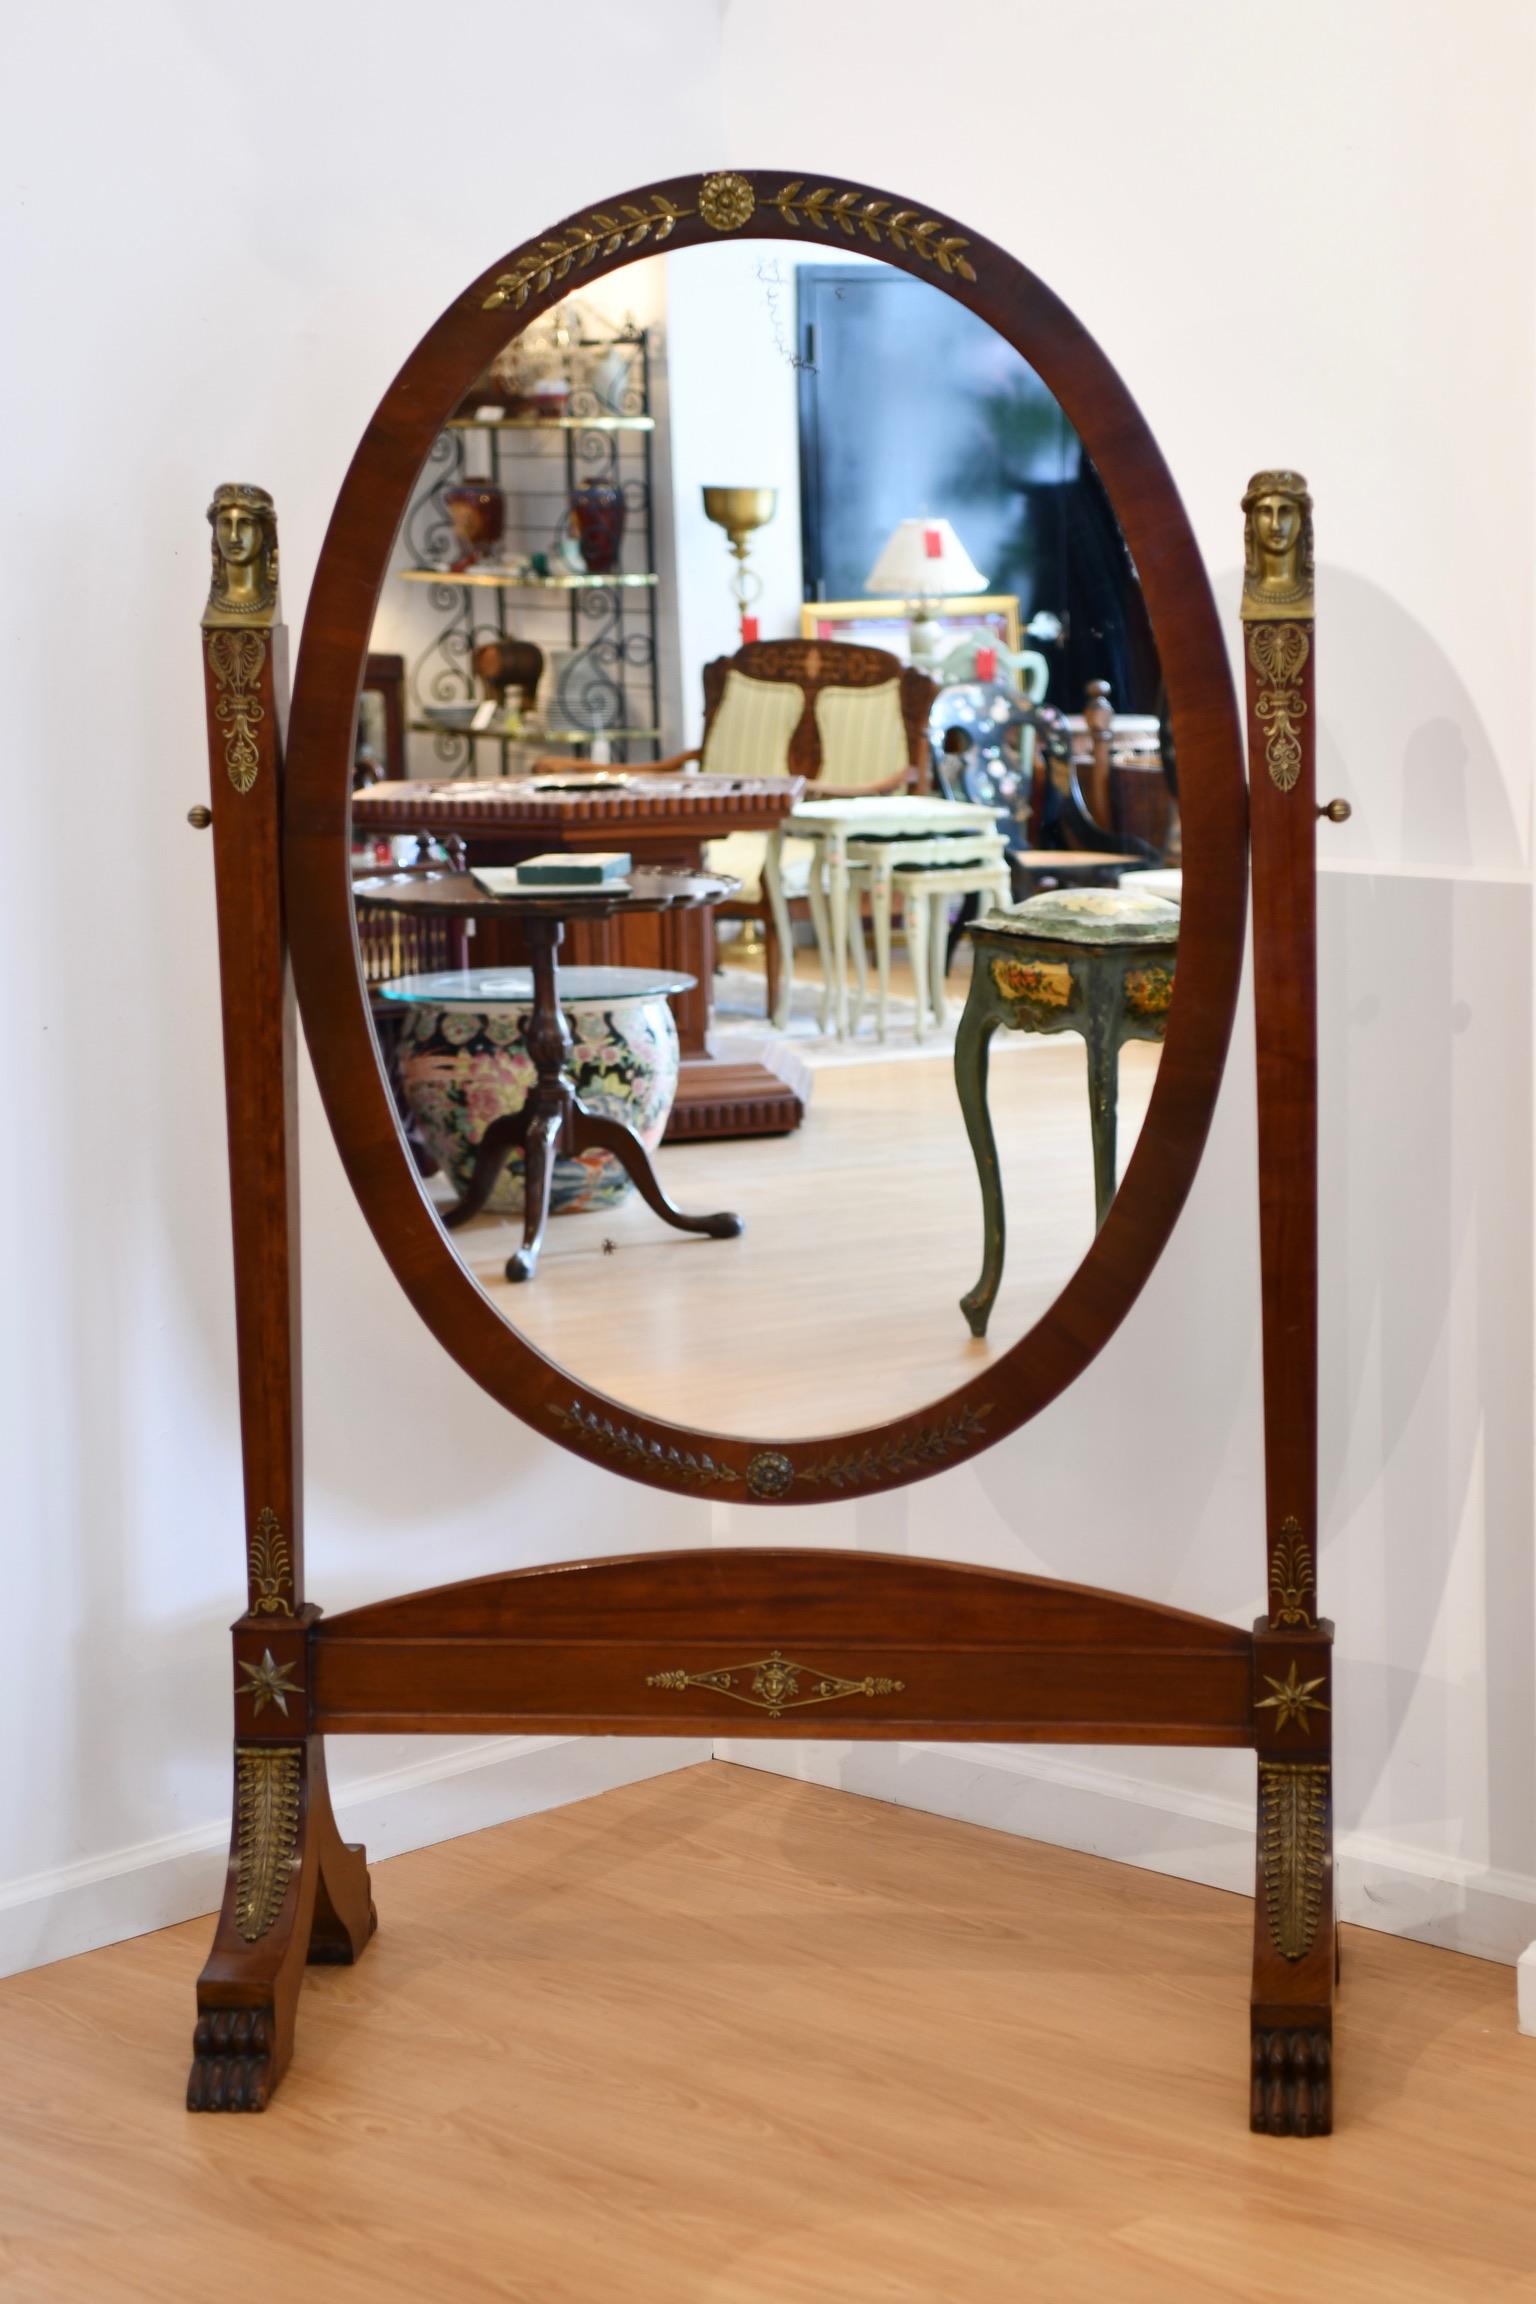 Miroir chevaleresque ancien de style Empire français, avec pieds griffes et accents de bronze figuratif, vers 1900. Réparations à un joint ; quelques mouchetures mineures sur le verre miroir. Dimensions : 65,5 